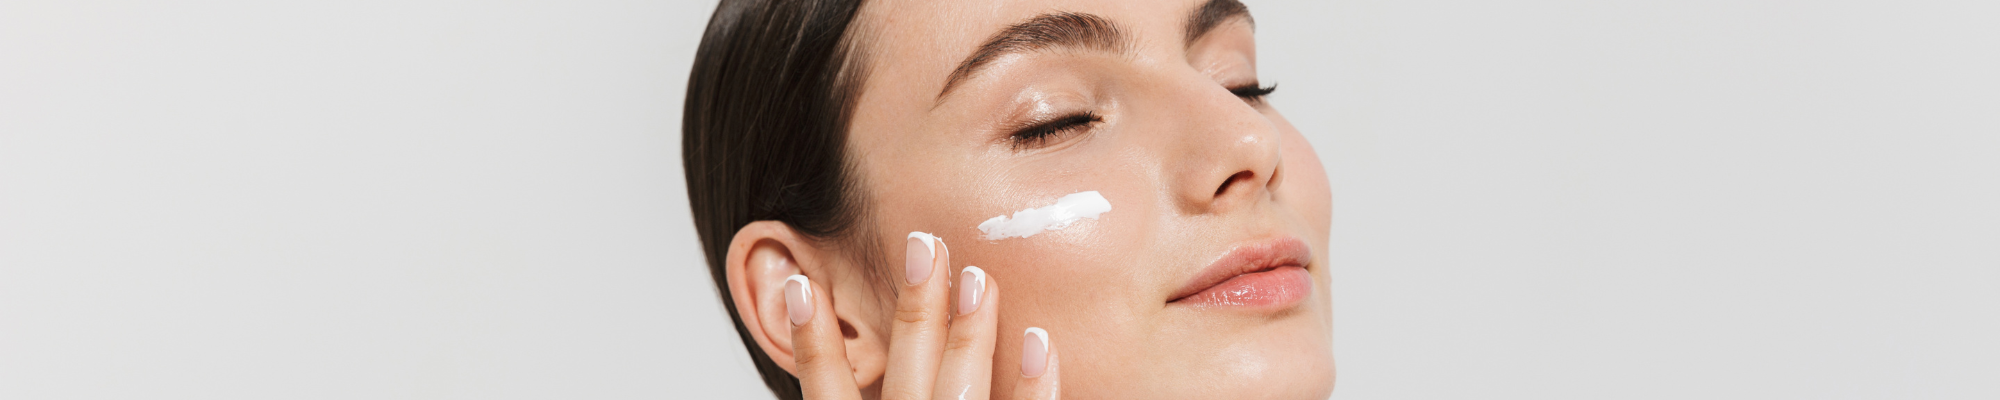 Face Brightening Cream - 14 Amazing Benefits